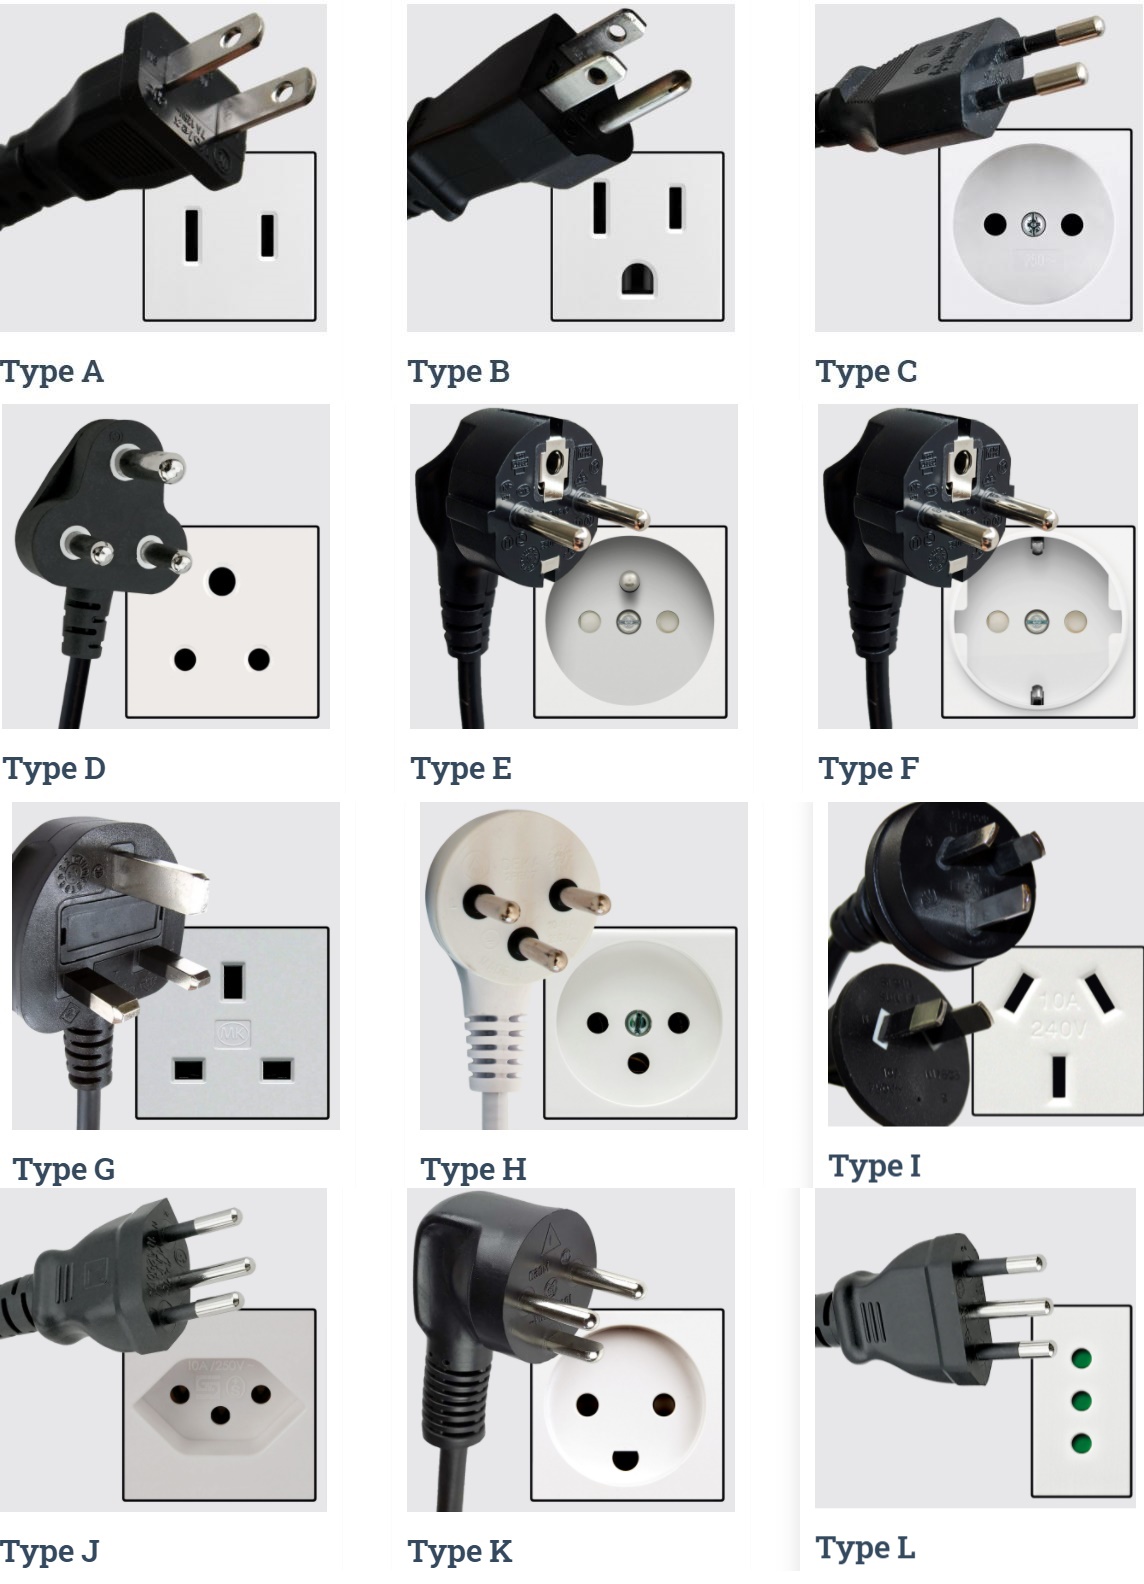 https://www.ledlightbulb.net/images/led/plug-socket.JPG